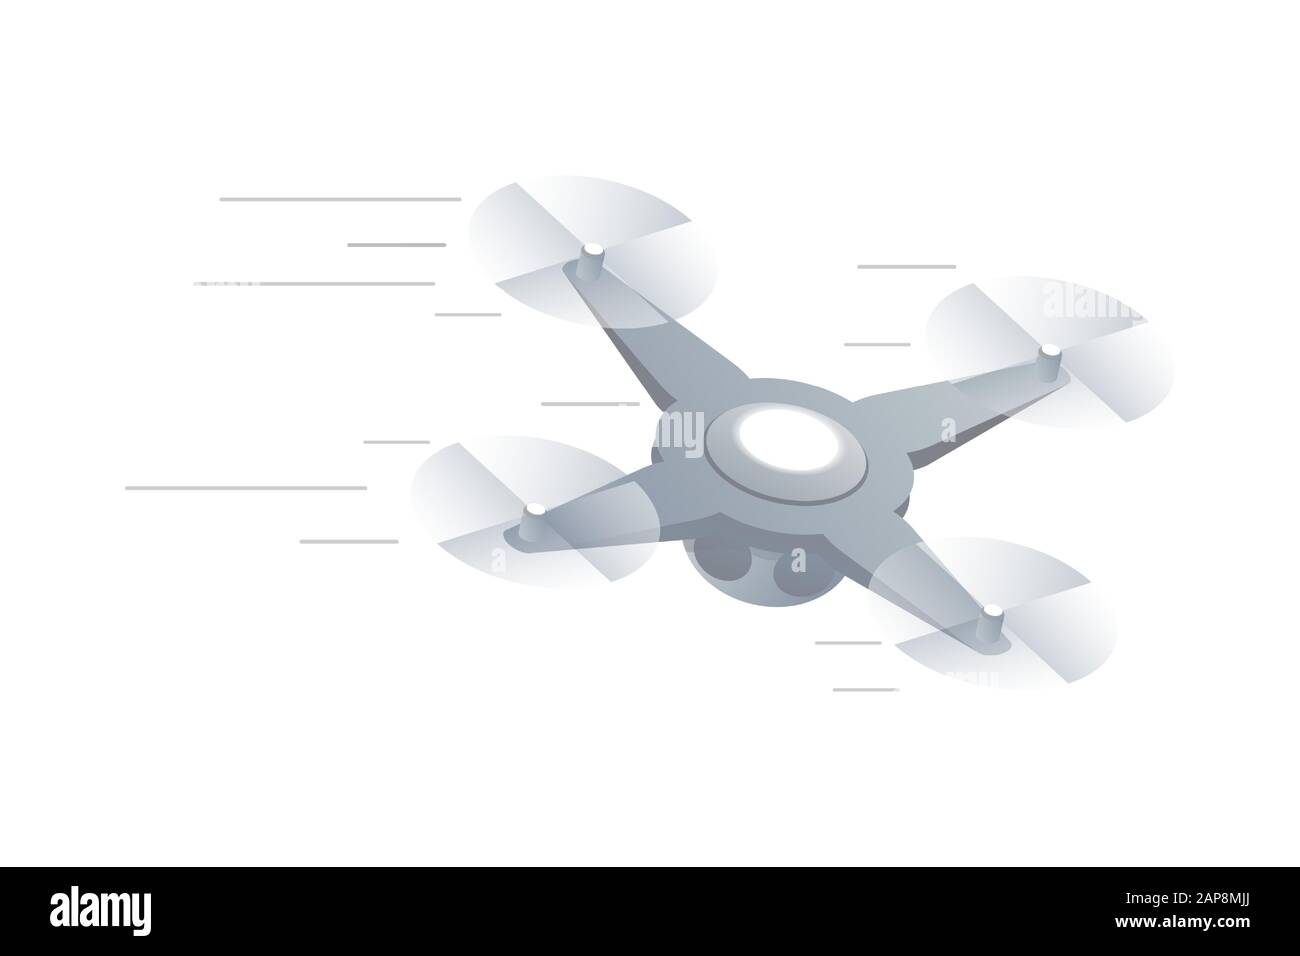 Immagine vettoriale isometrica del drone ad antenna veloce. Quadricottero controllato a distanza in movimento, moderno aereo mobile, UAV isolato su sfondo bianco. Elemento di design tecnologico contemporaneo Illustrazione Vettoriale